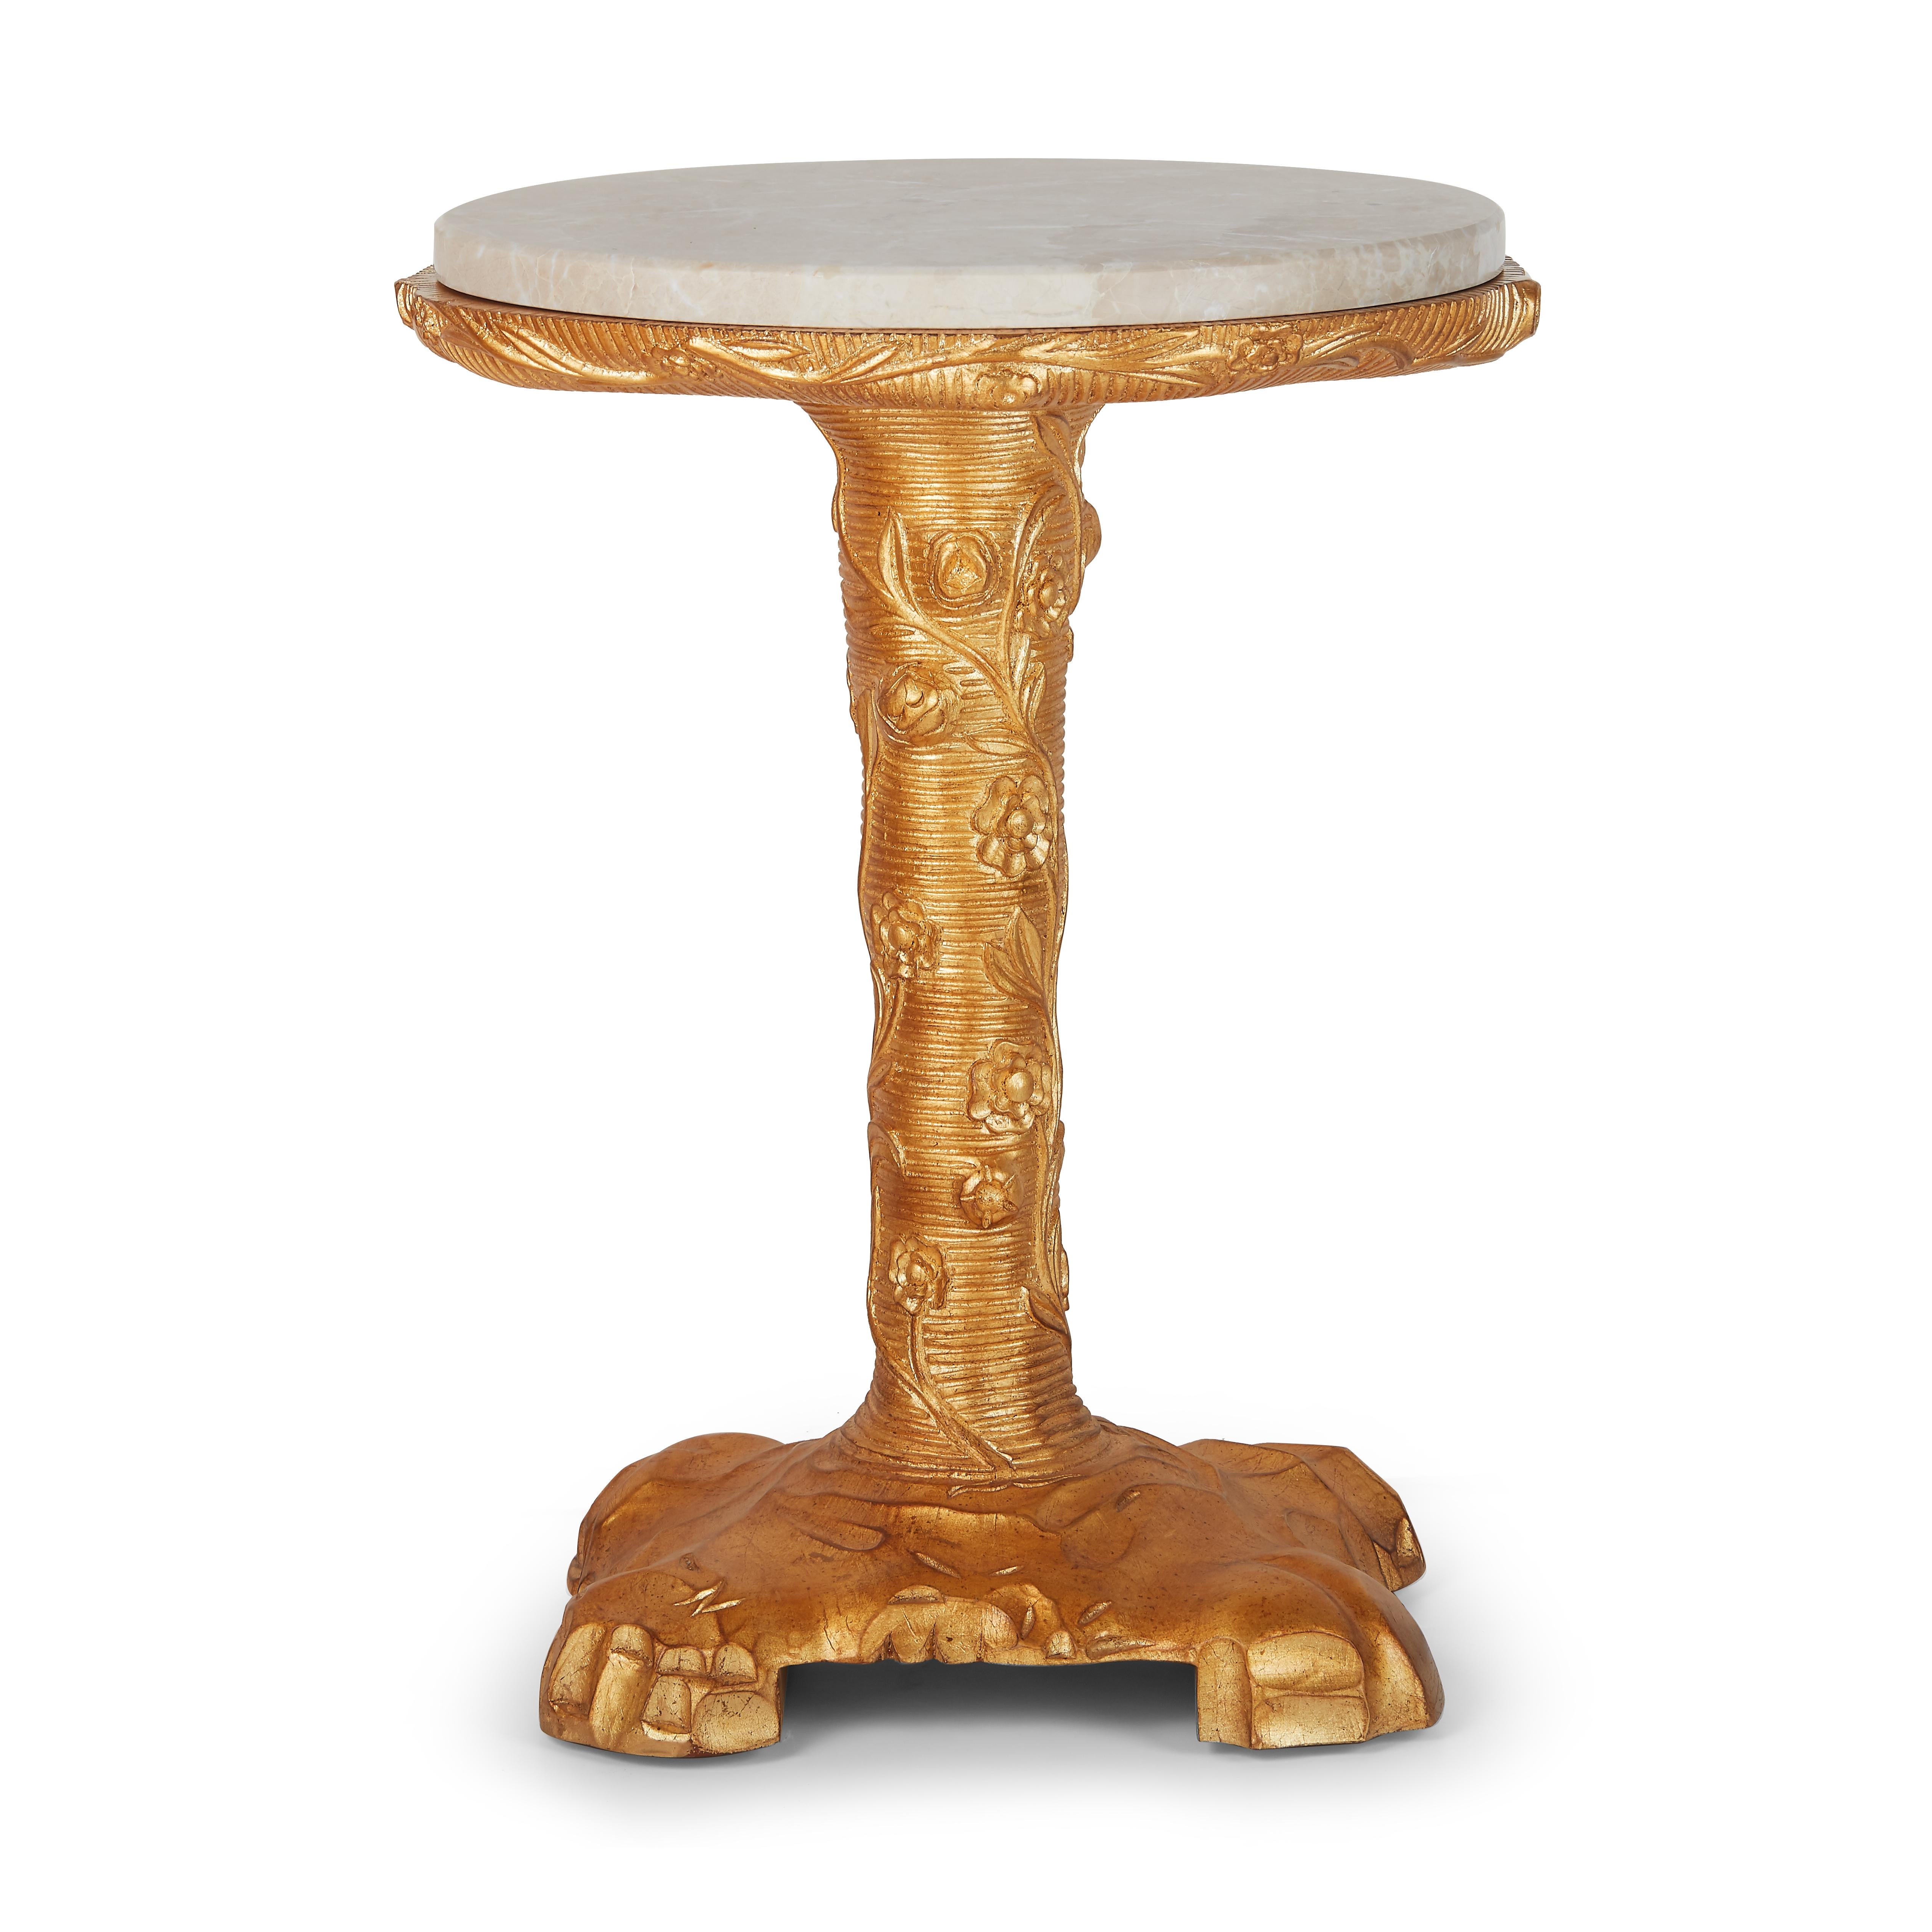 Dieses zauberhafte Tischchen ist von der Rokoko-Kunst des 18. Jahrhunderts inspiriert und verkörpert den fröhlichen dekorativen Charakter dieser Zeit. Stilisierte Ranken, Zweige und felsenähnliche Motive glänzen mit einer glänzenden, handvergoldeten